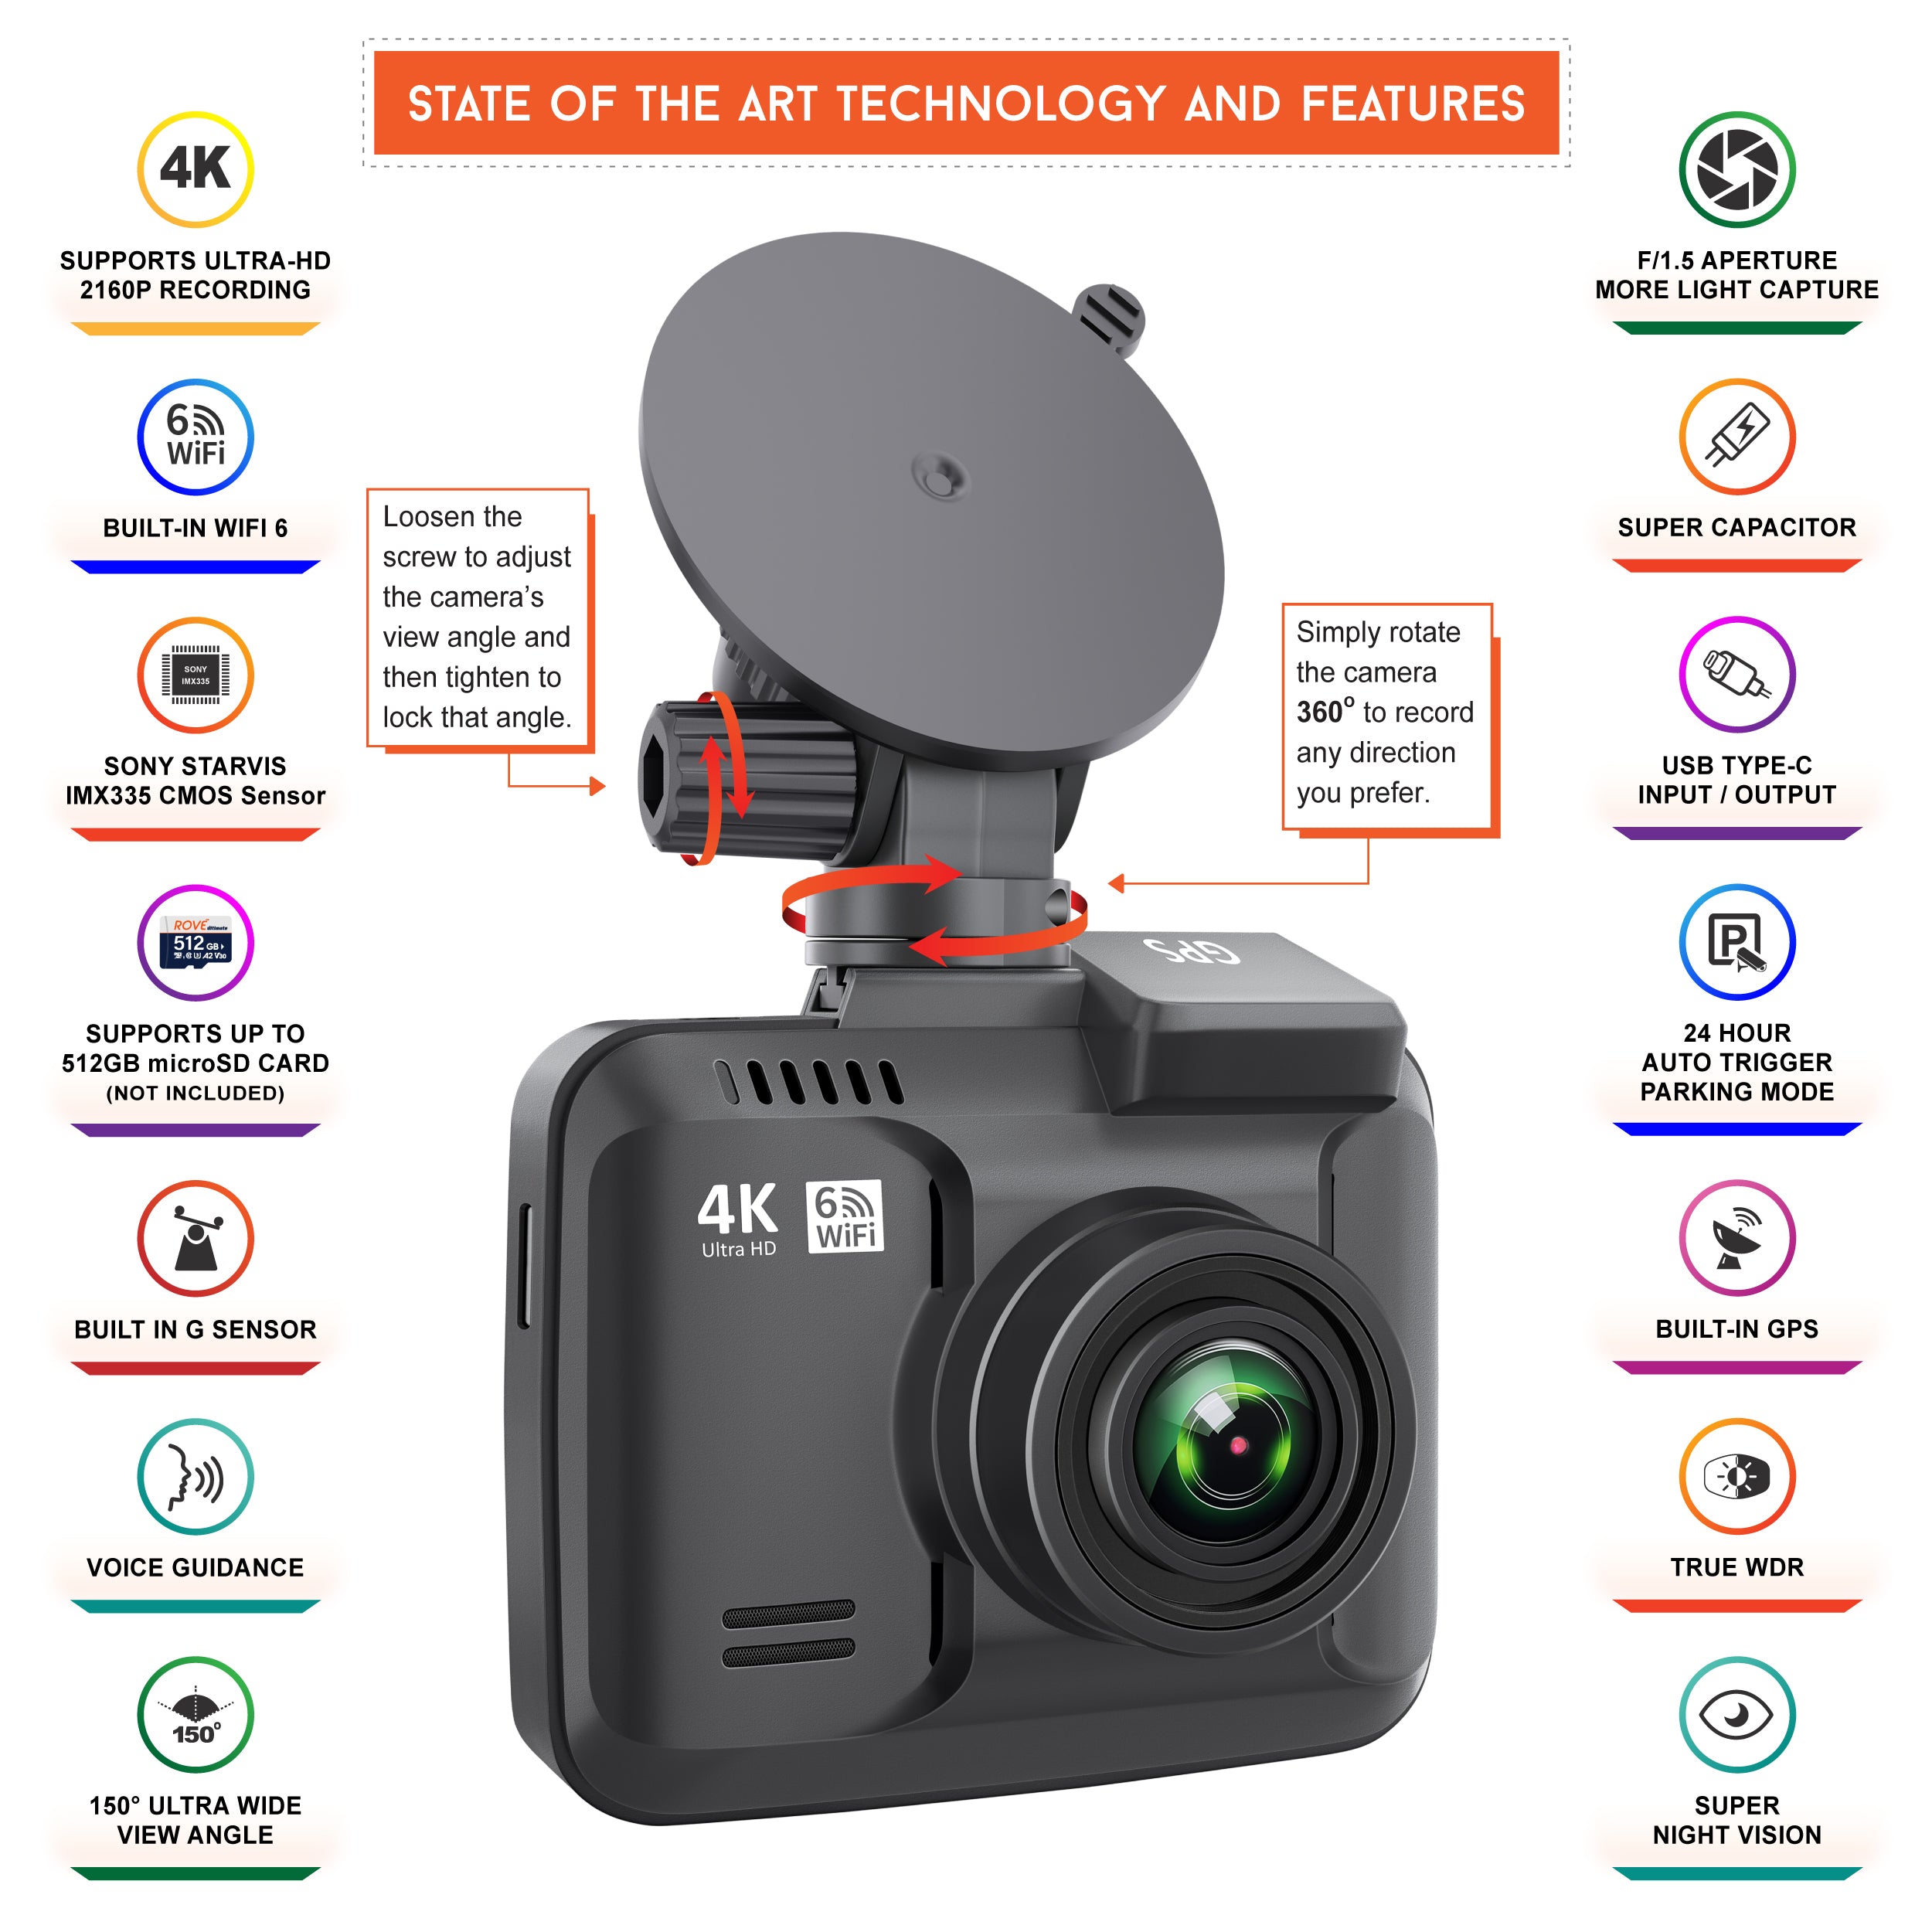 ROVE R2-4K Dash Cam 4K Ultra HD 2160P Car Dashboard Camera Built In Wi-Fi 6 & GPS